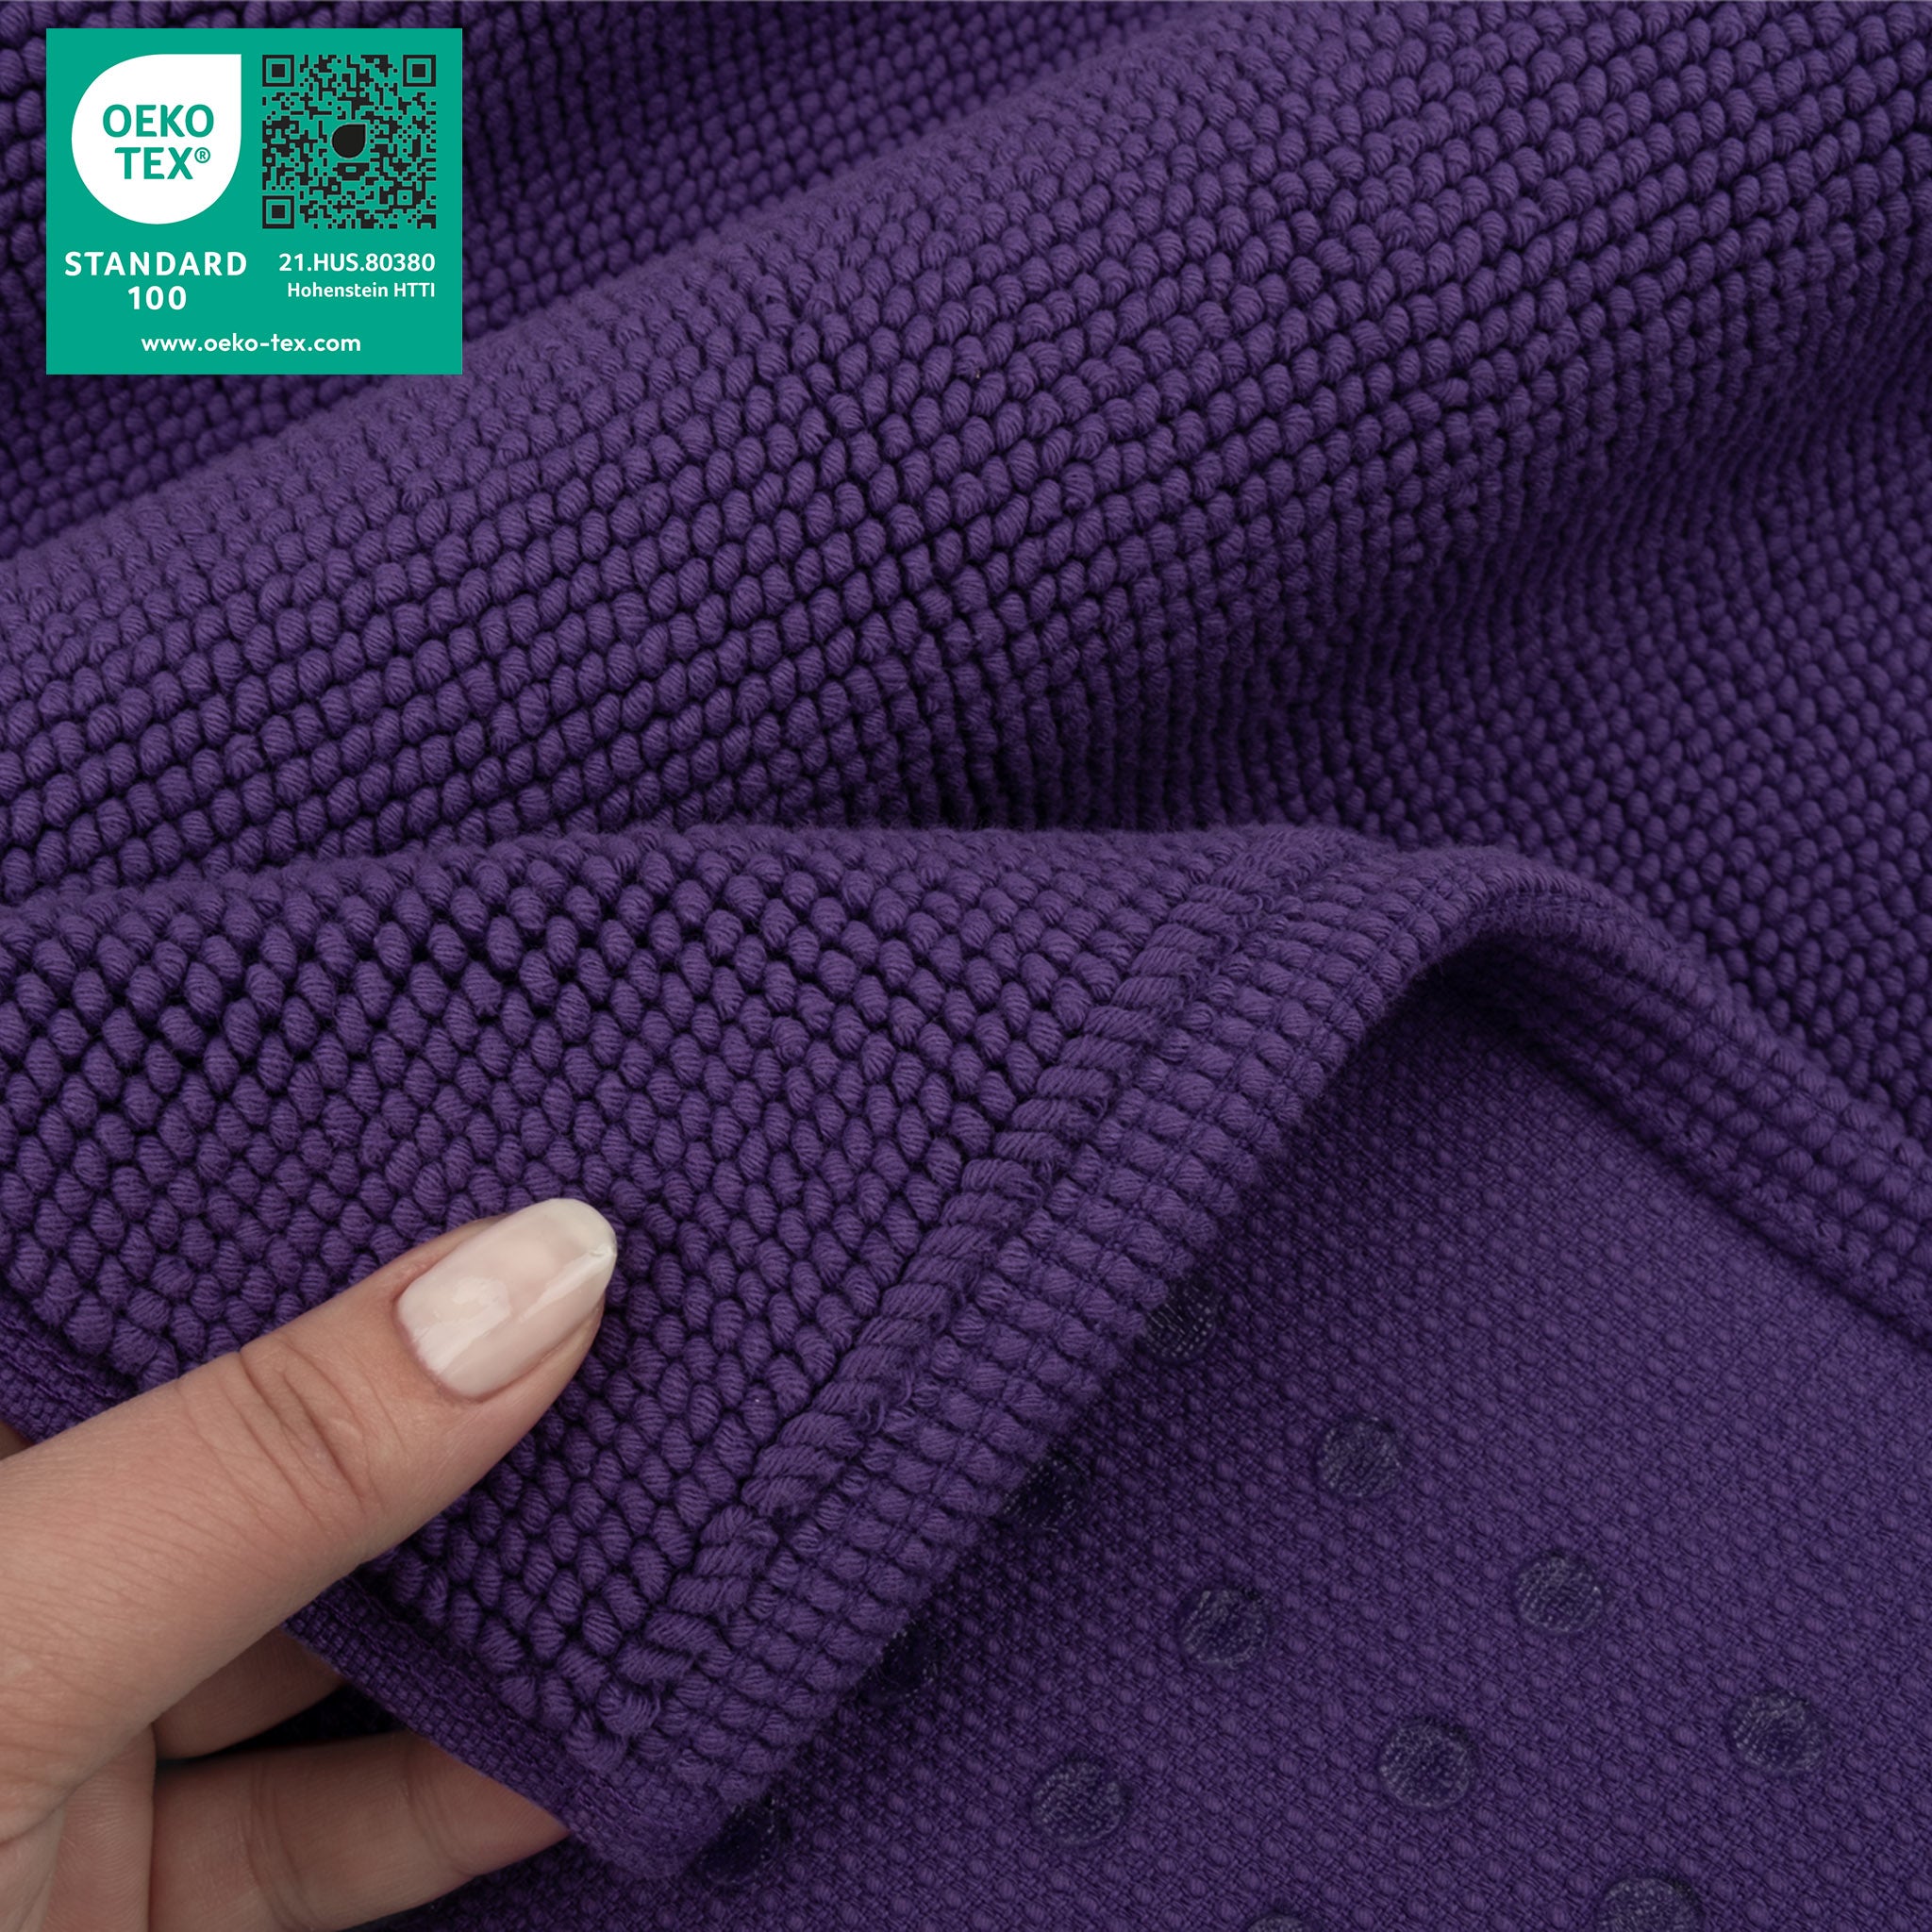 American Soft Linen 100% Cotton Non-Slip 17x24 Inch Bath Rug Wholesale purple-5